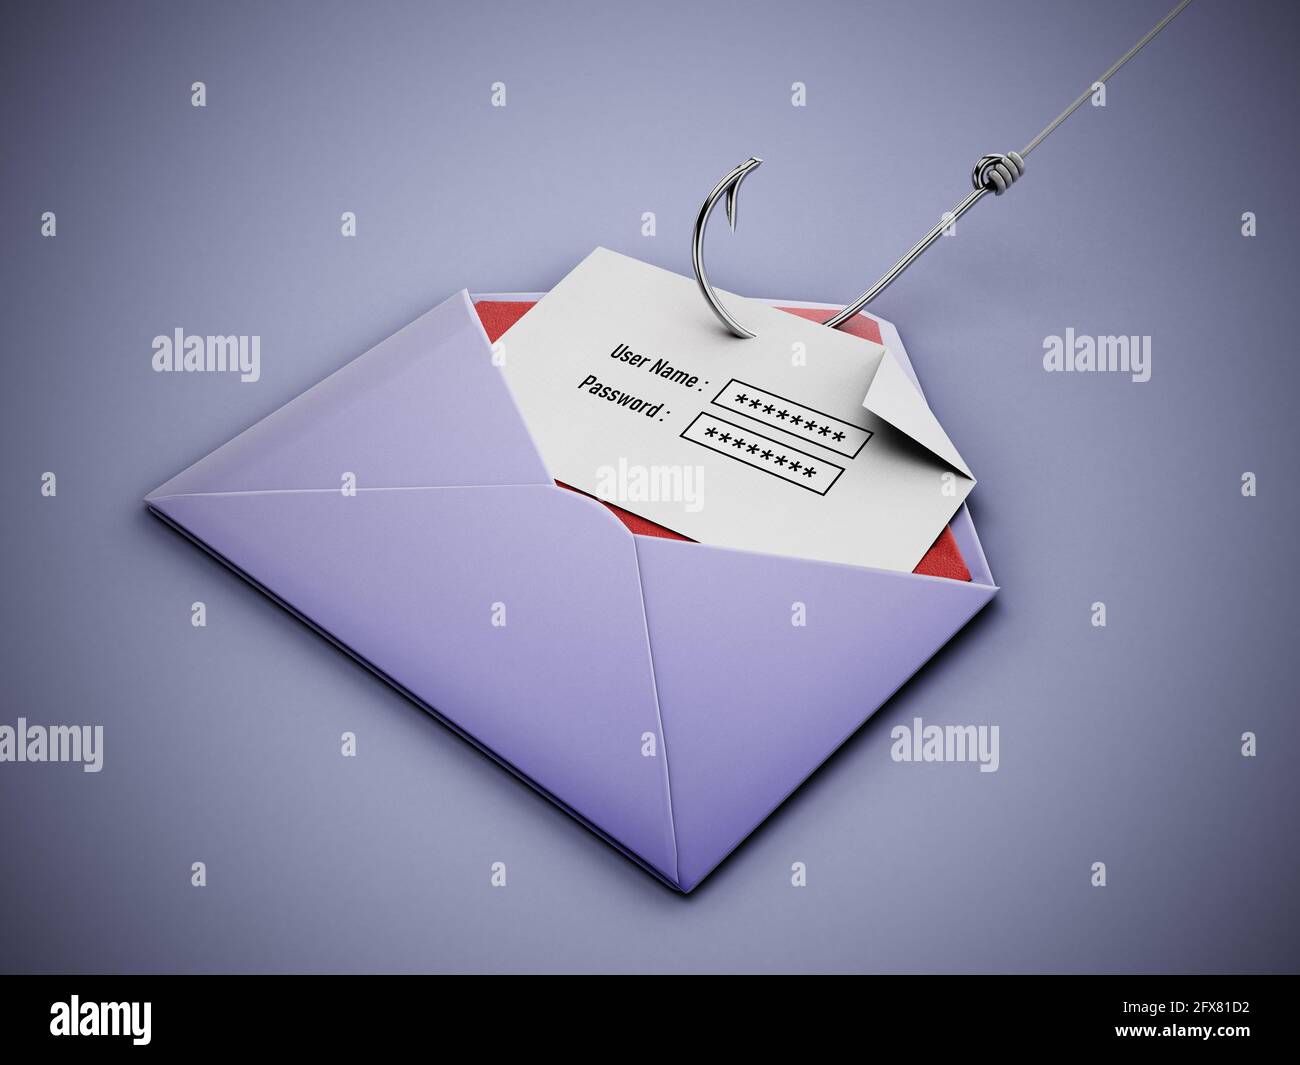 Crochet de poisson volant les zones de texte de nom d'utilisateur et de mot de passe sur le papier à l'intérieur d'une enveloppe. Illustration 3D. Banque D'Images